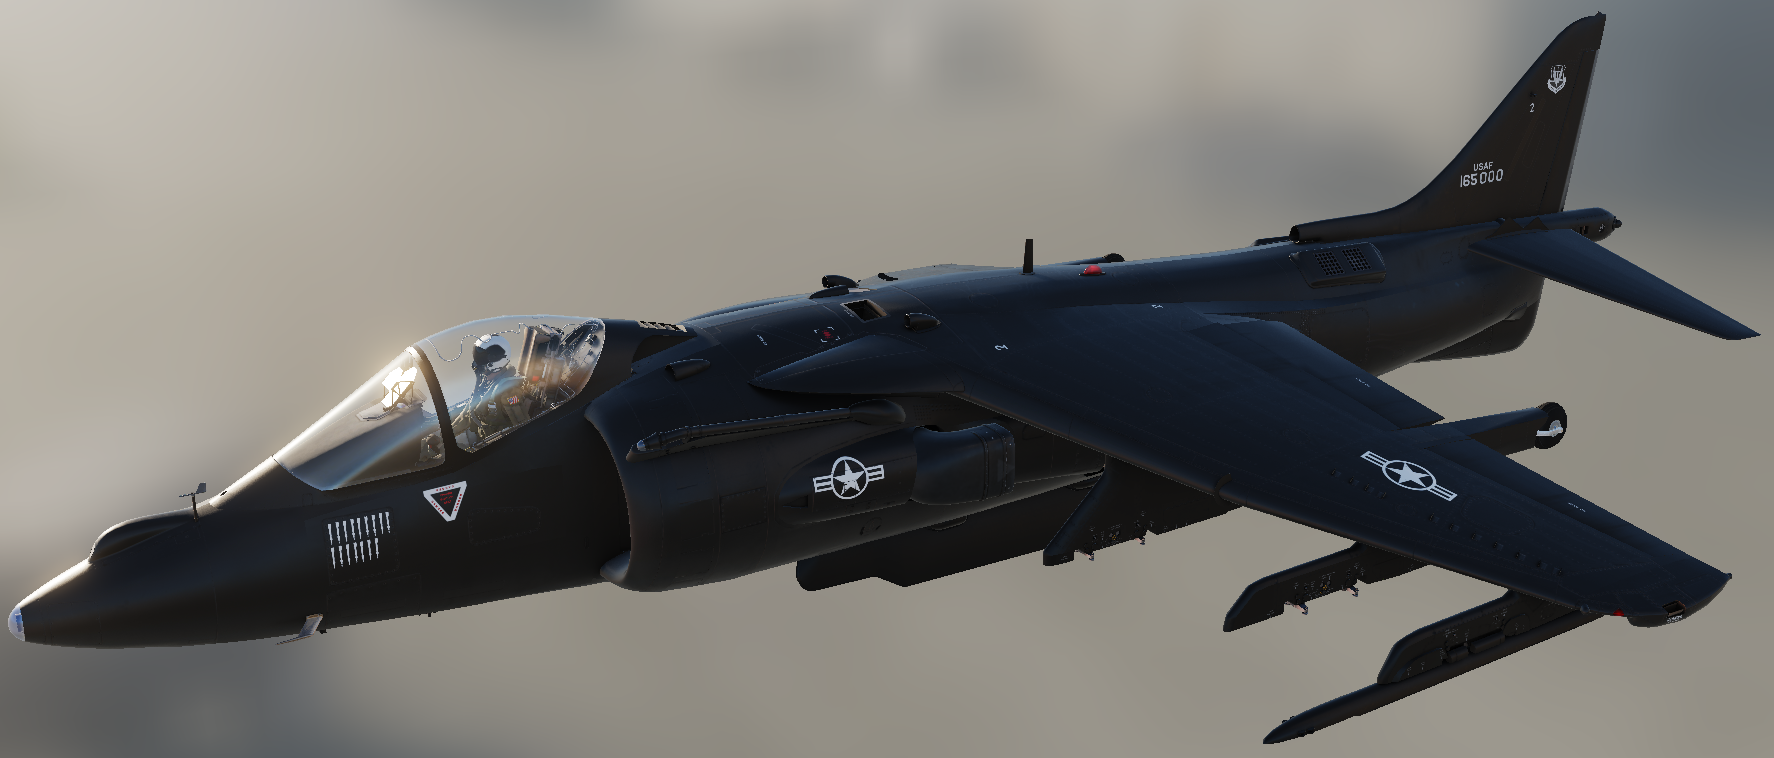 Fictional skin for AV-8B N/A: "Nighthawk"